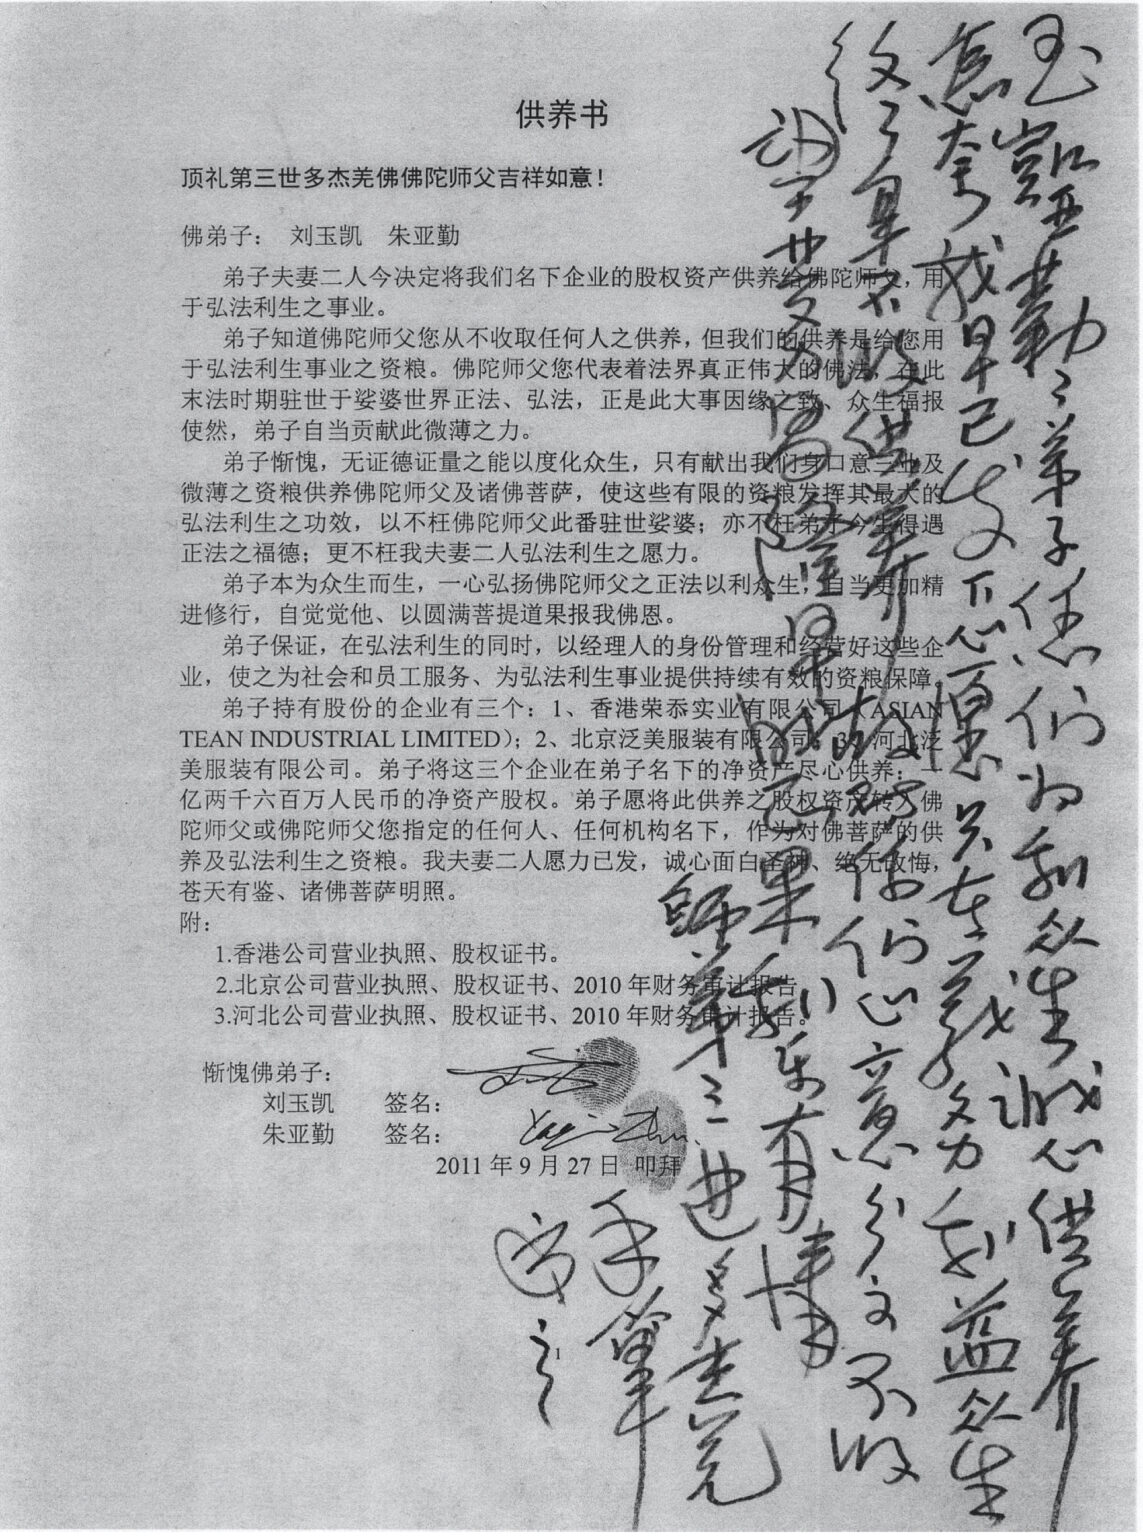 刘玉凯夫妇捐巨款给南无羌佛的供养书，羌佛在上面批文说明不收供养。有图为证。